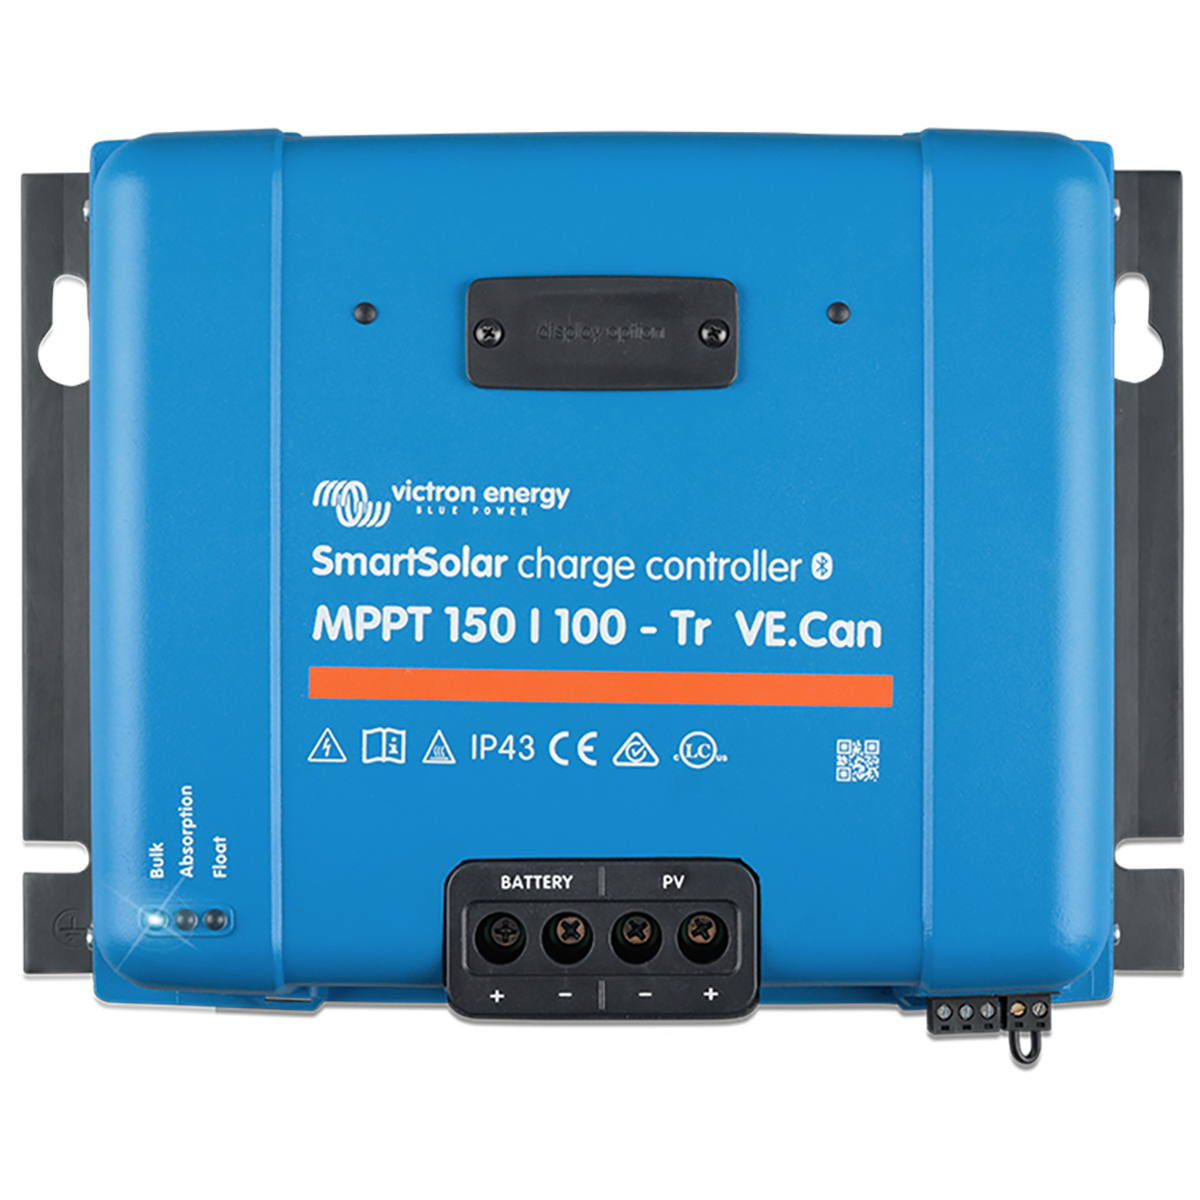 150/100-Tr MPPT VICTRON n.v., SmartSolar ENERGY Laderegler VE.Can Blau